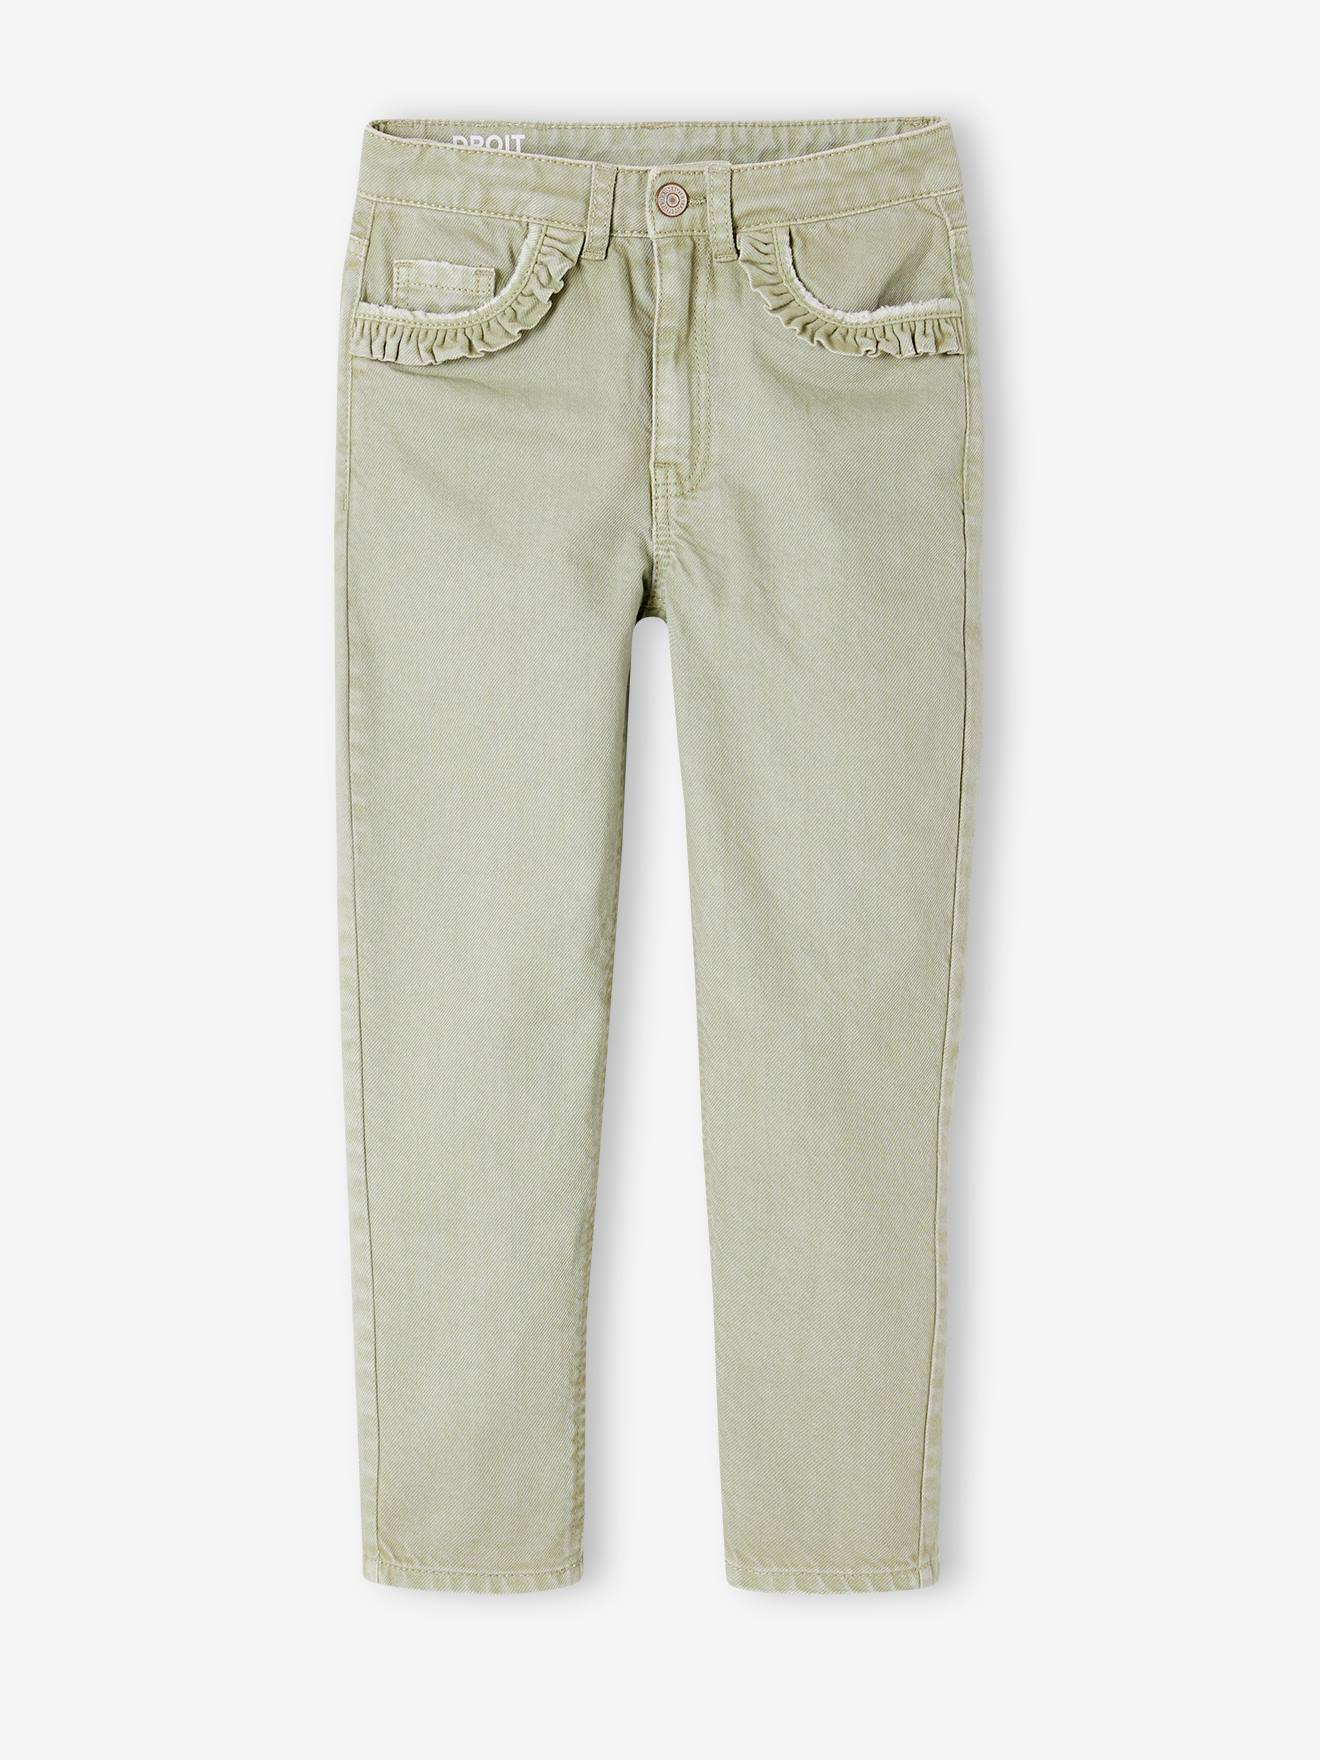 Aprenda como medir sua cintura e acerte na compra da calça jeans